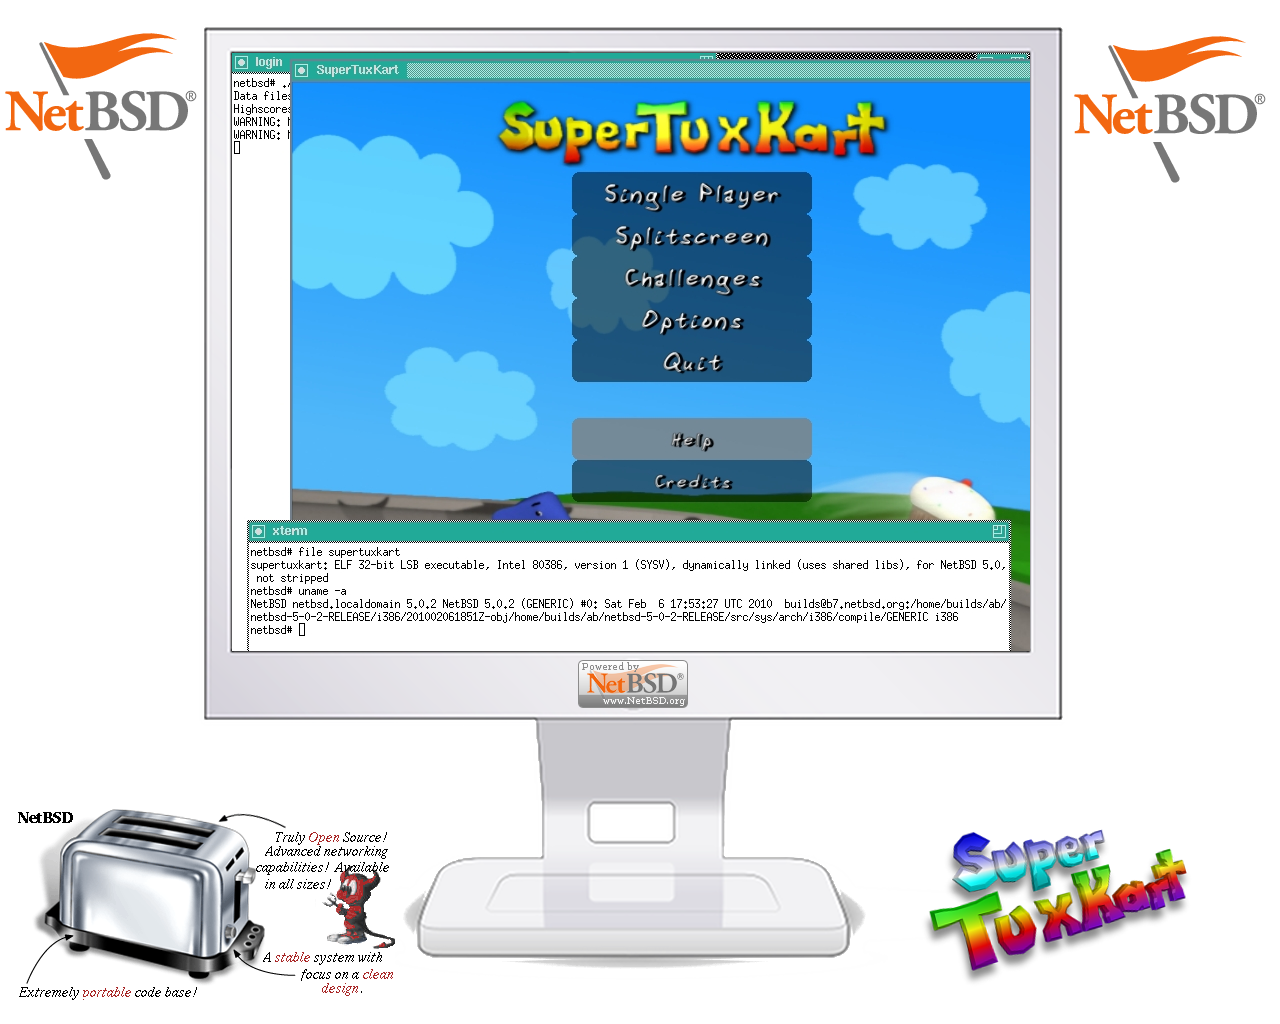 supertuxkart-screenshot-netbsd.png